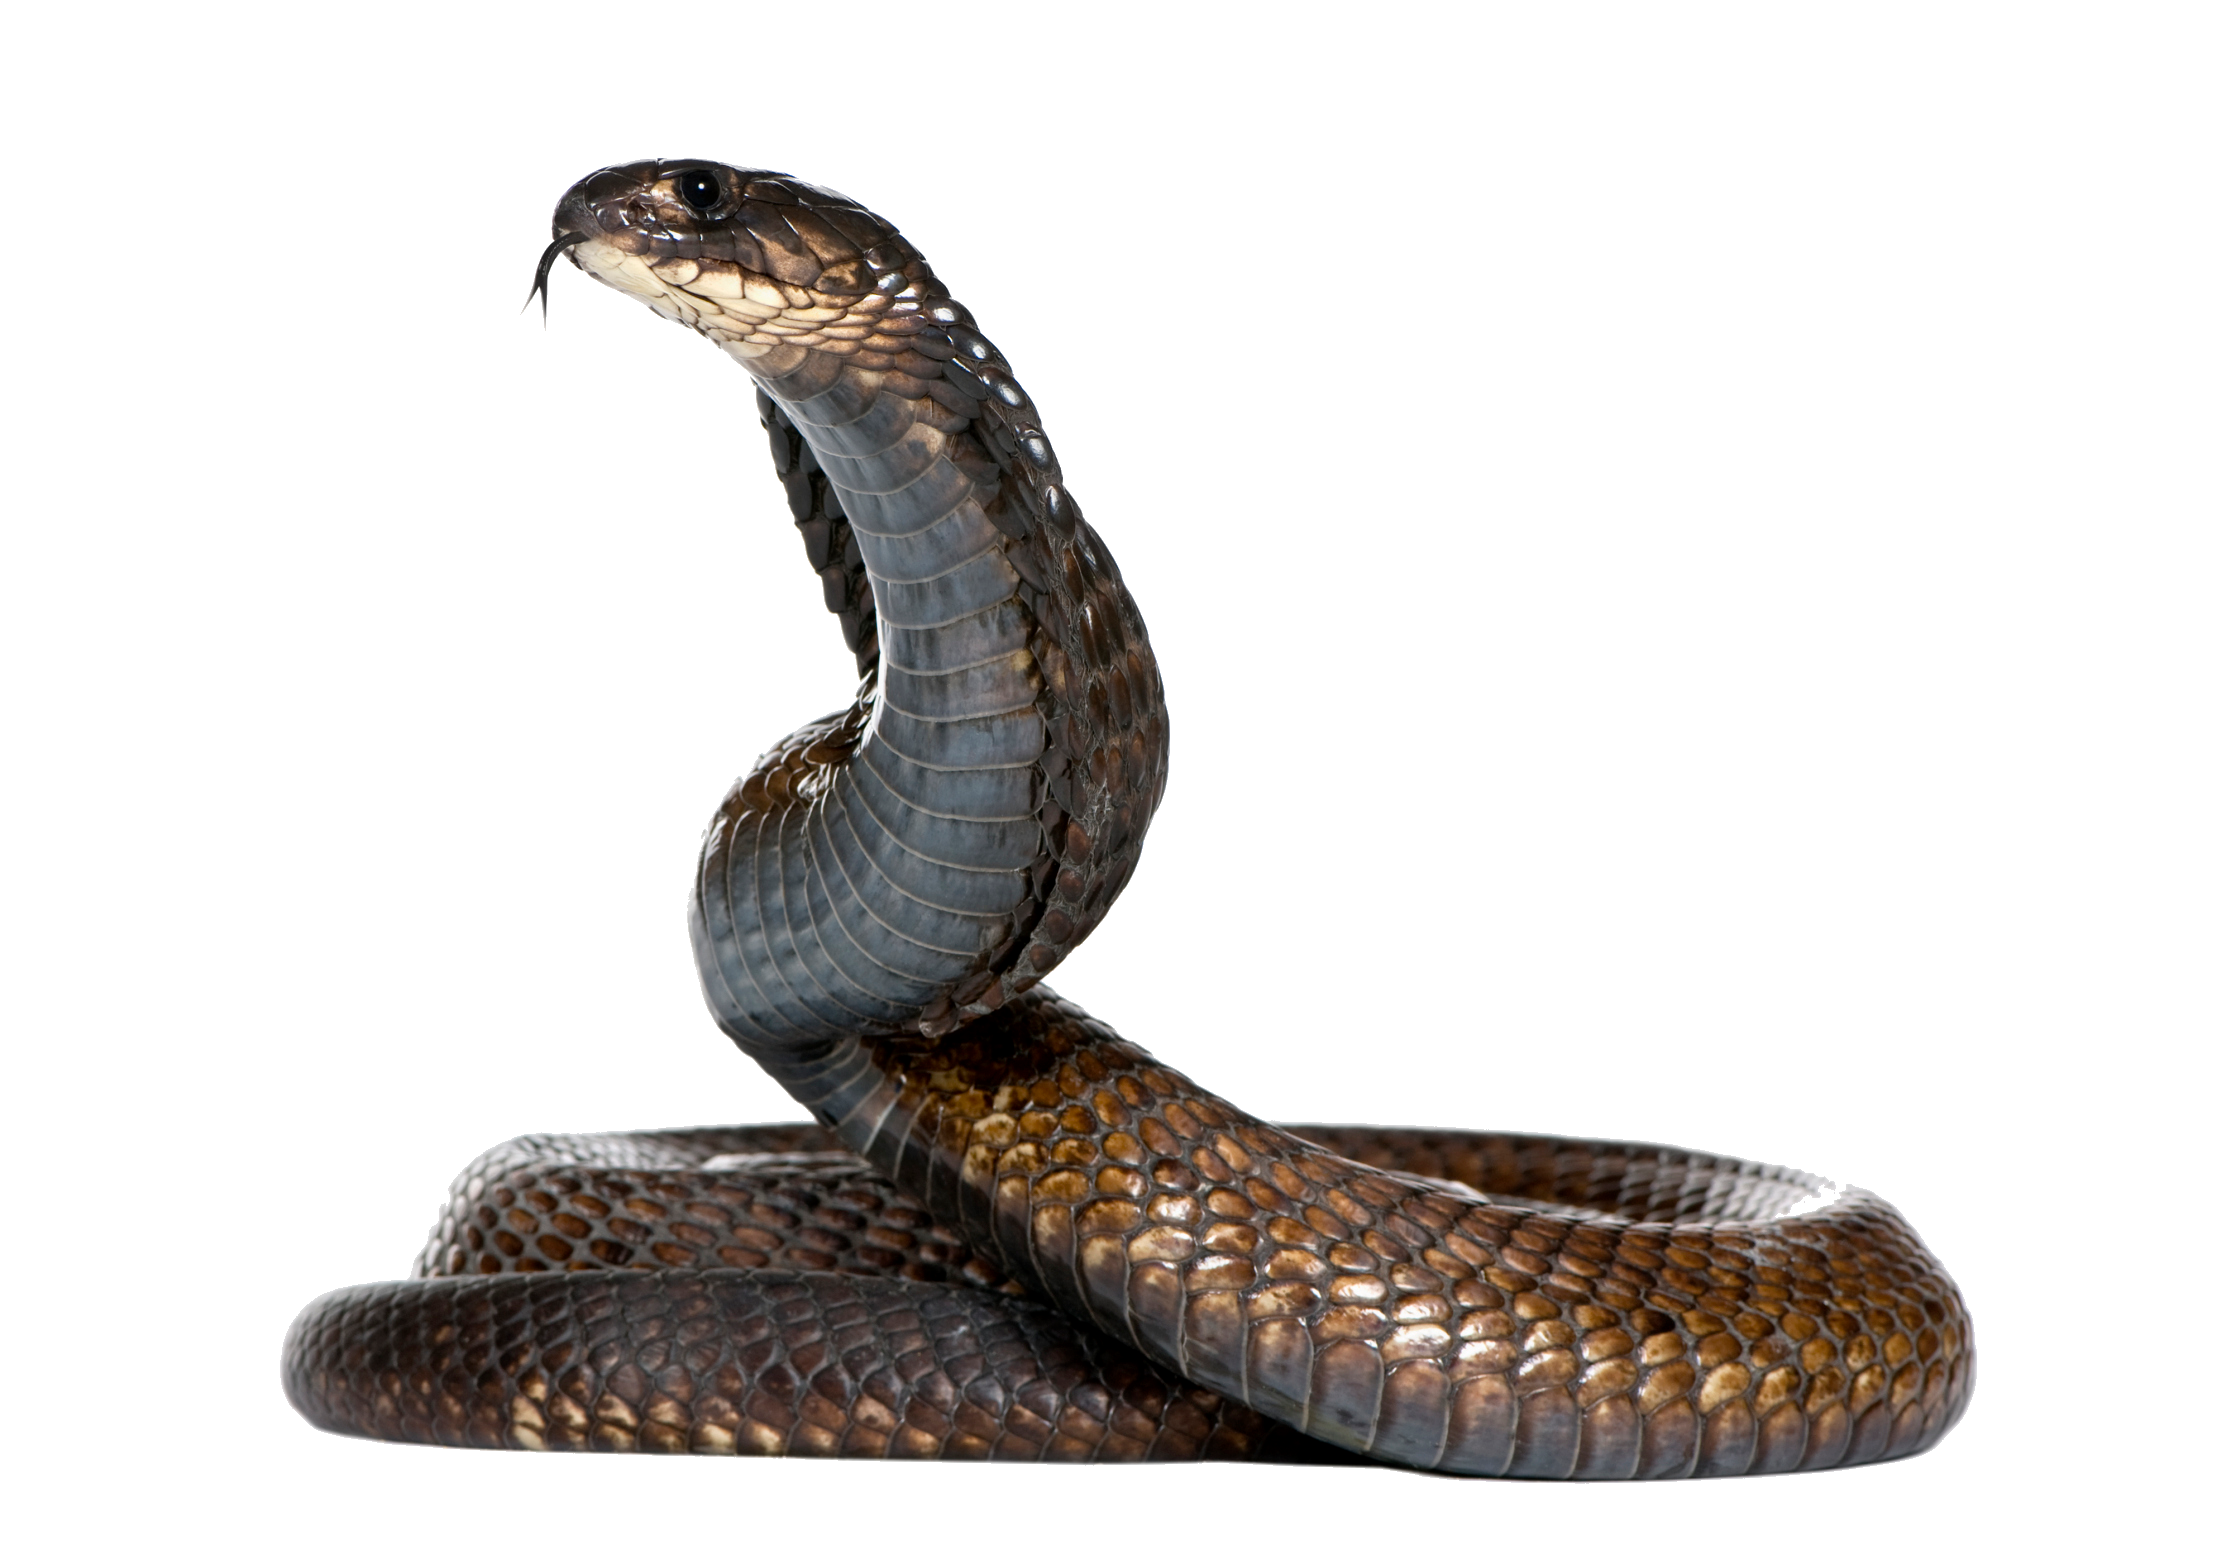 Cobra snake PNG image